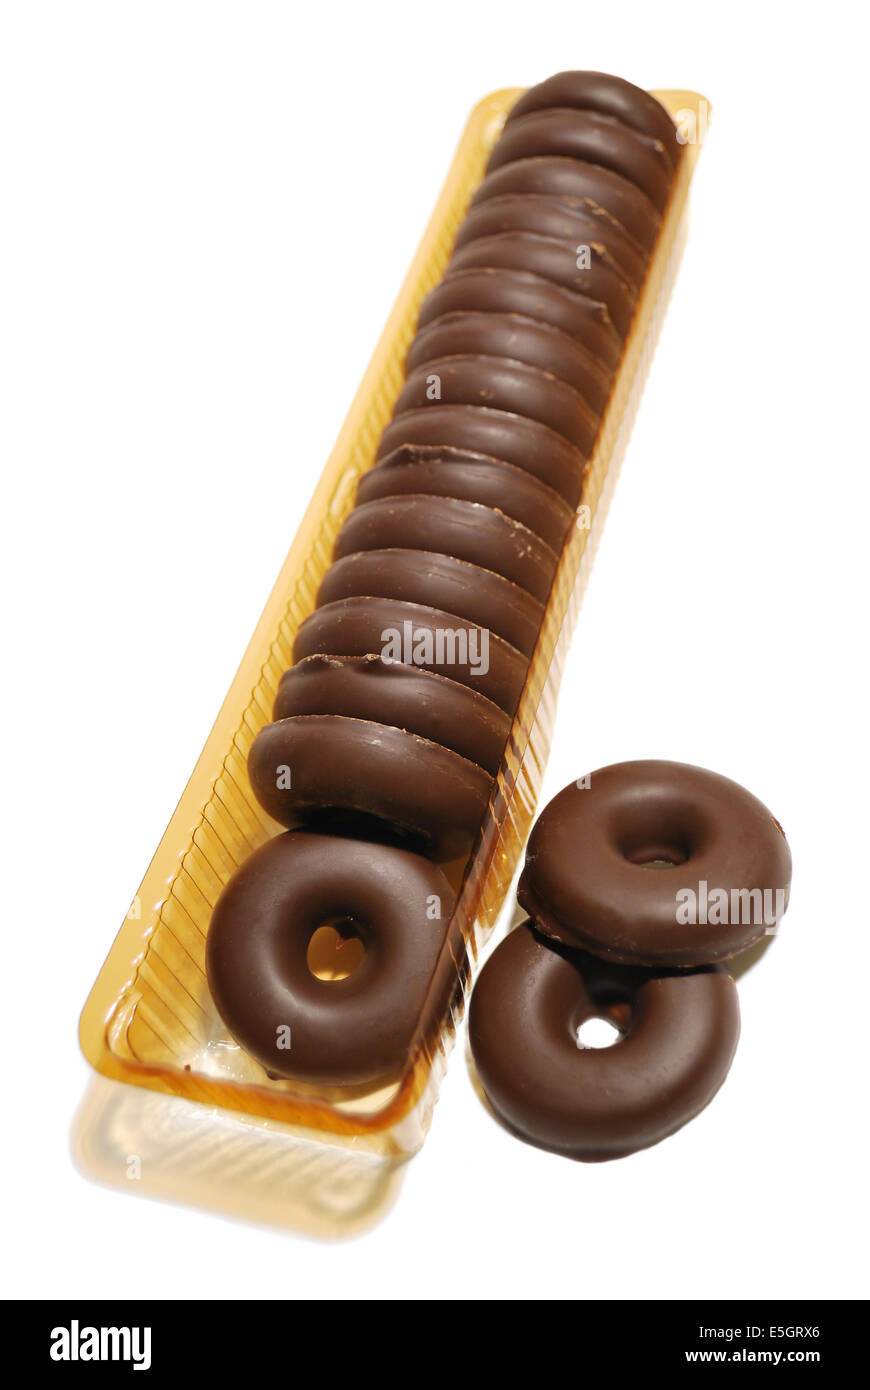 Schoko-Cookie Ringe in offene Packung auf weißem Hintergrund  Stockfotografie - Alamy